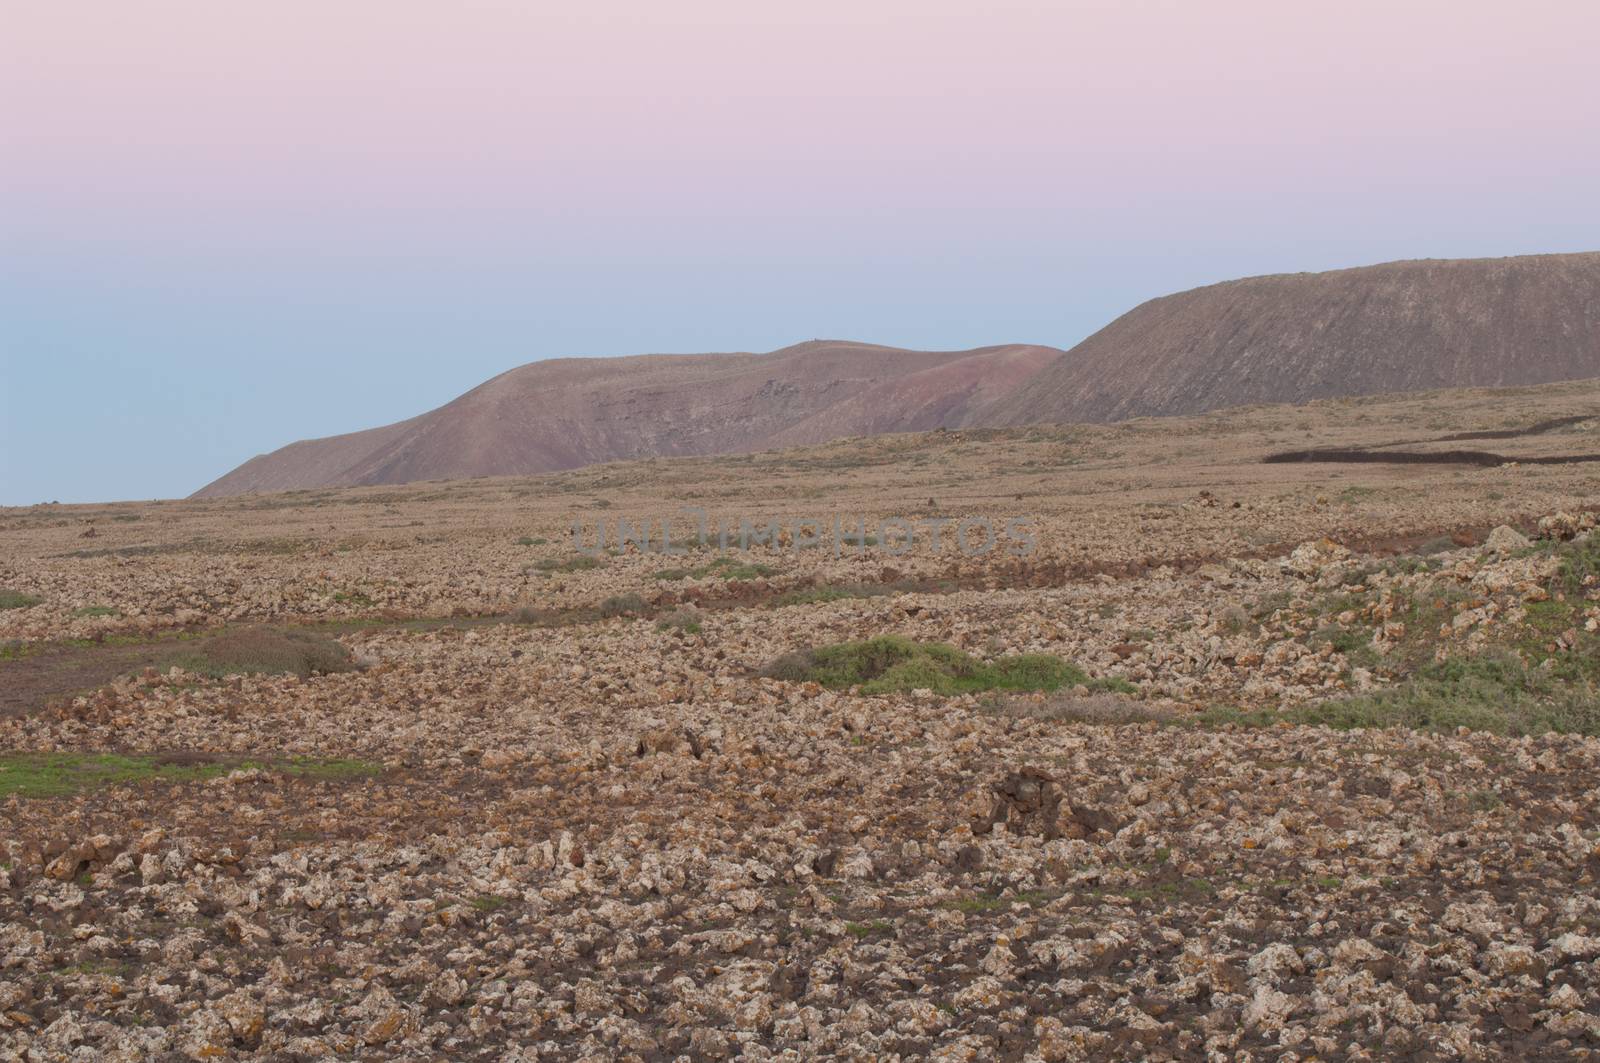 Desertic landscape at sunset. by VictorSuarez